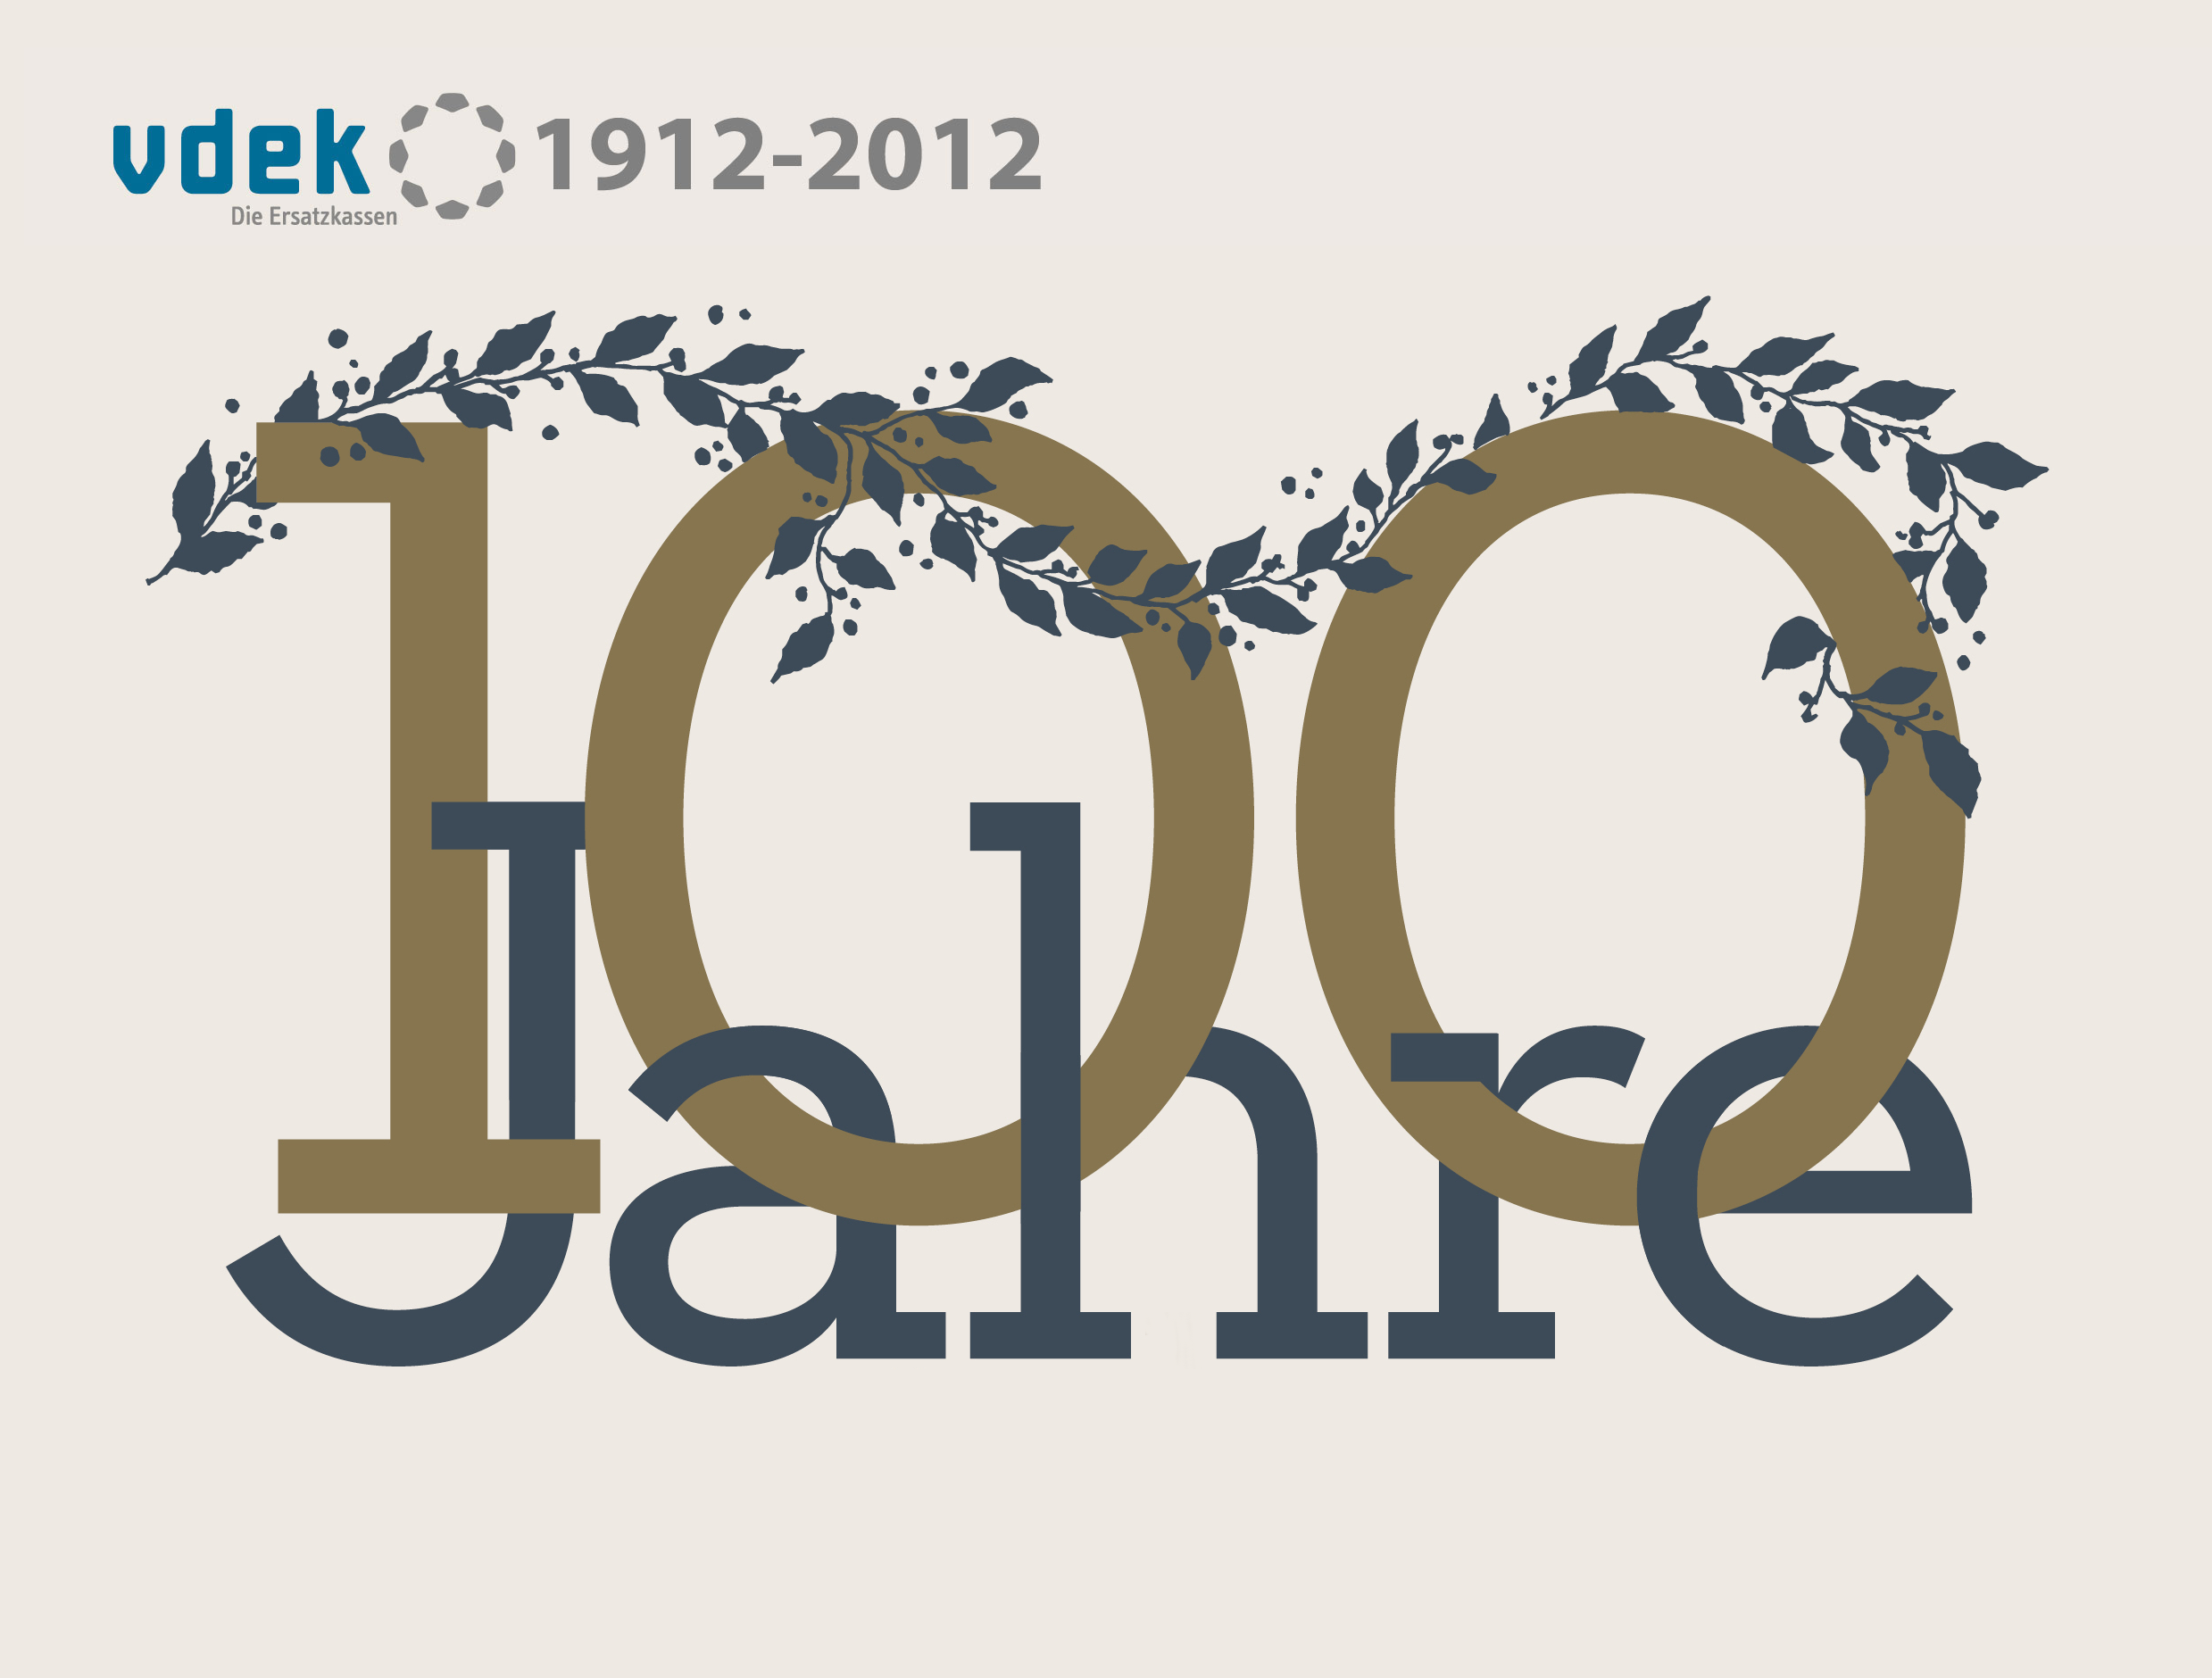 "100 Jahre vdek: 1912-2012", golden-blauer Schriftzug auf beigem Hintergrund